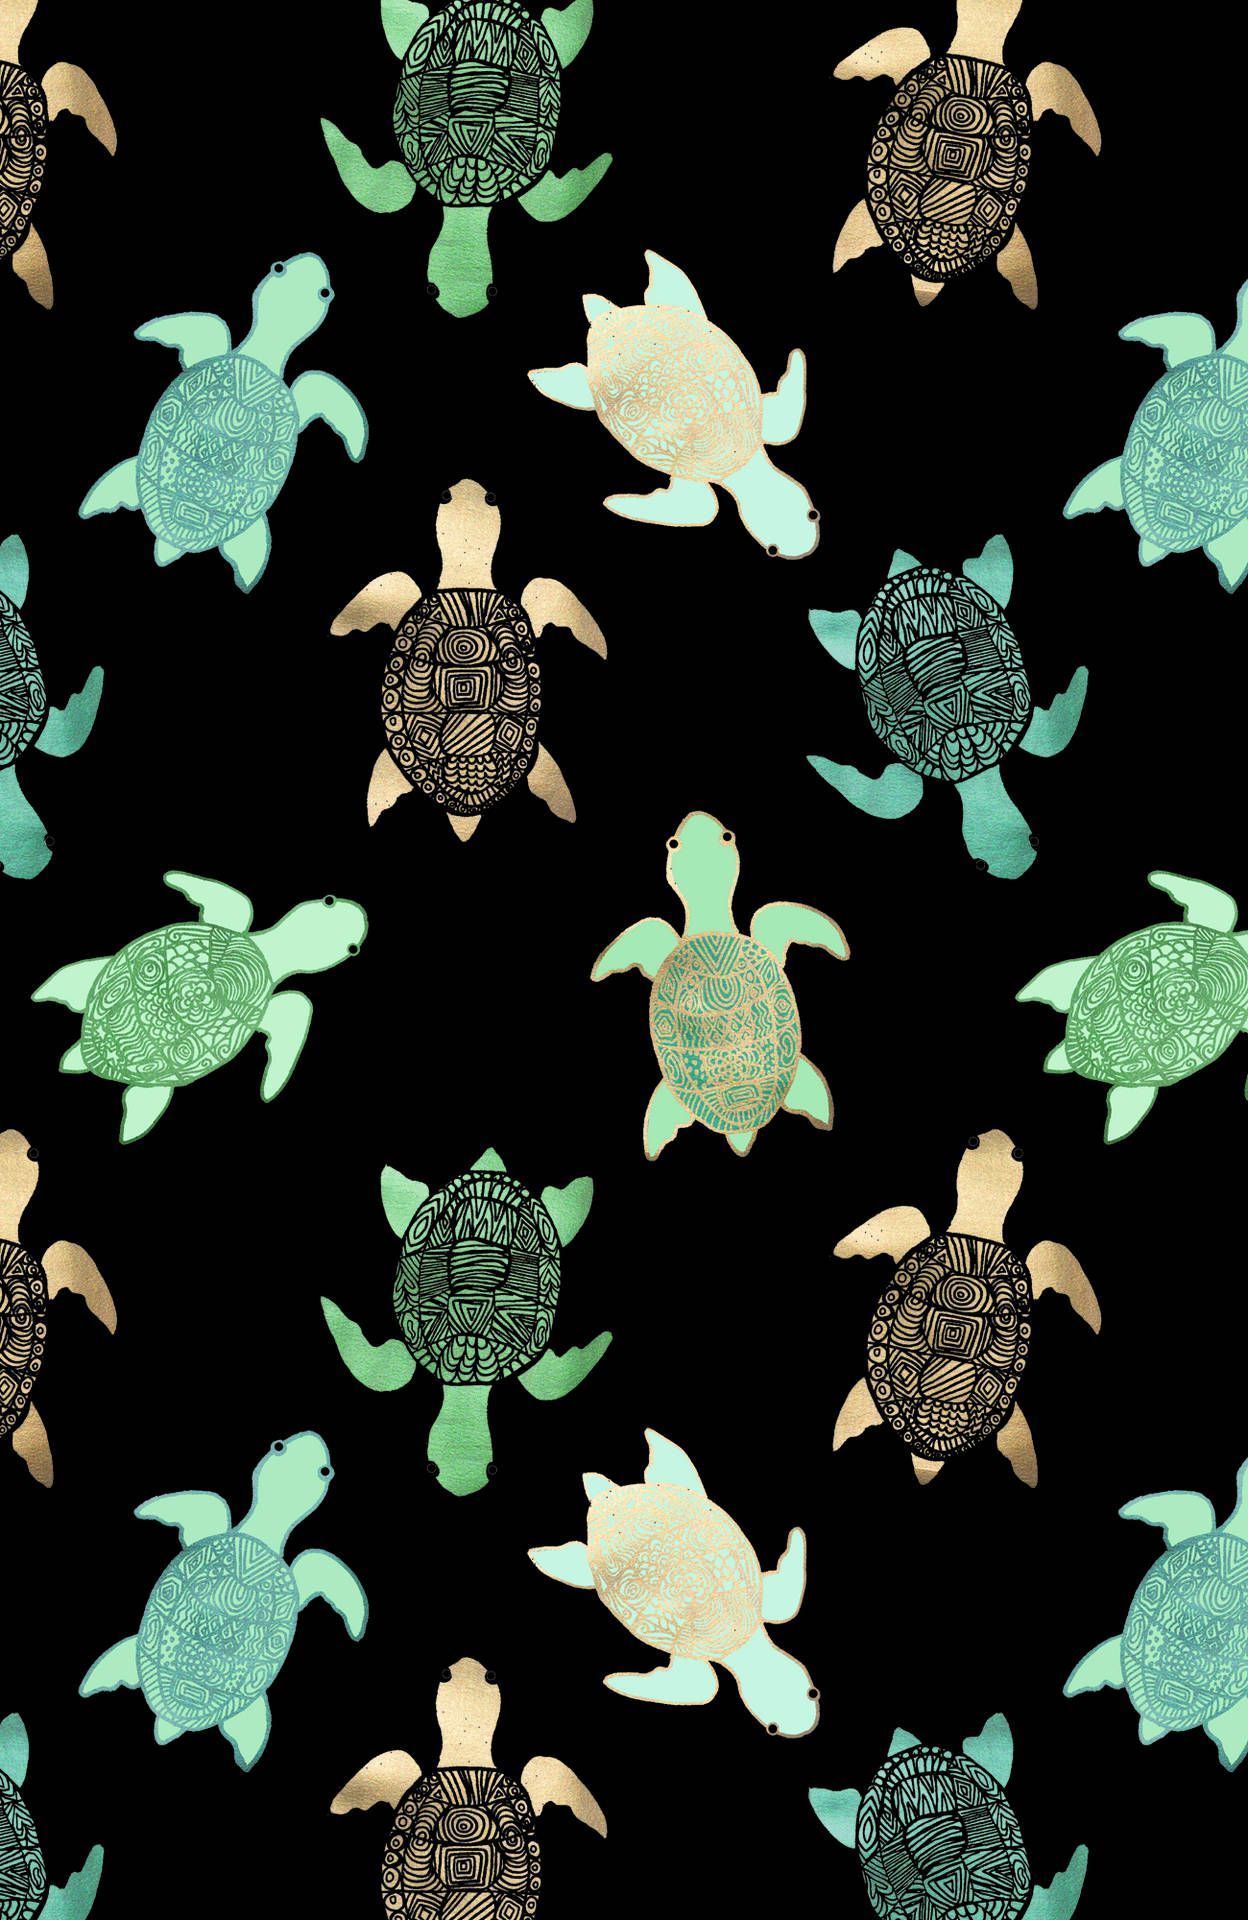 Turtles on a black background - Turtle, sea turtle